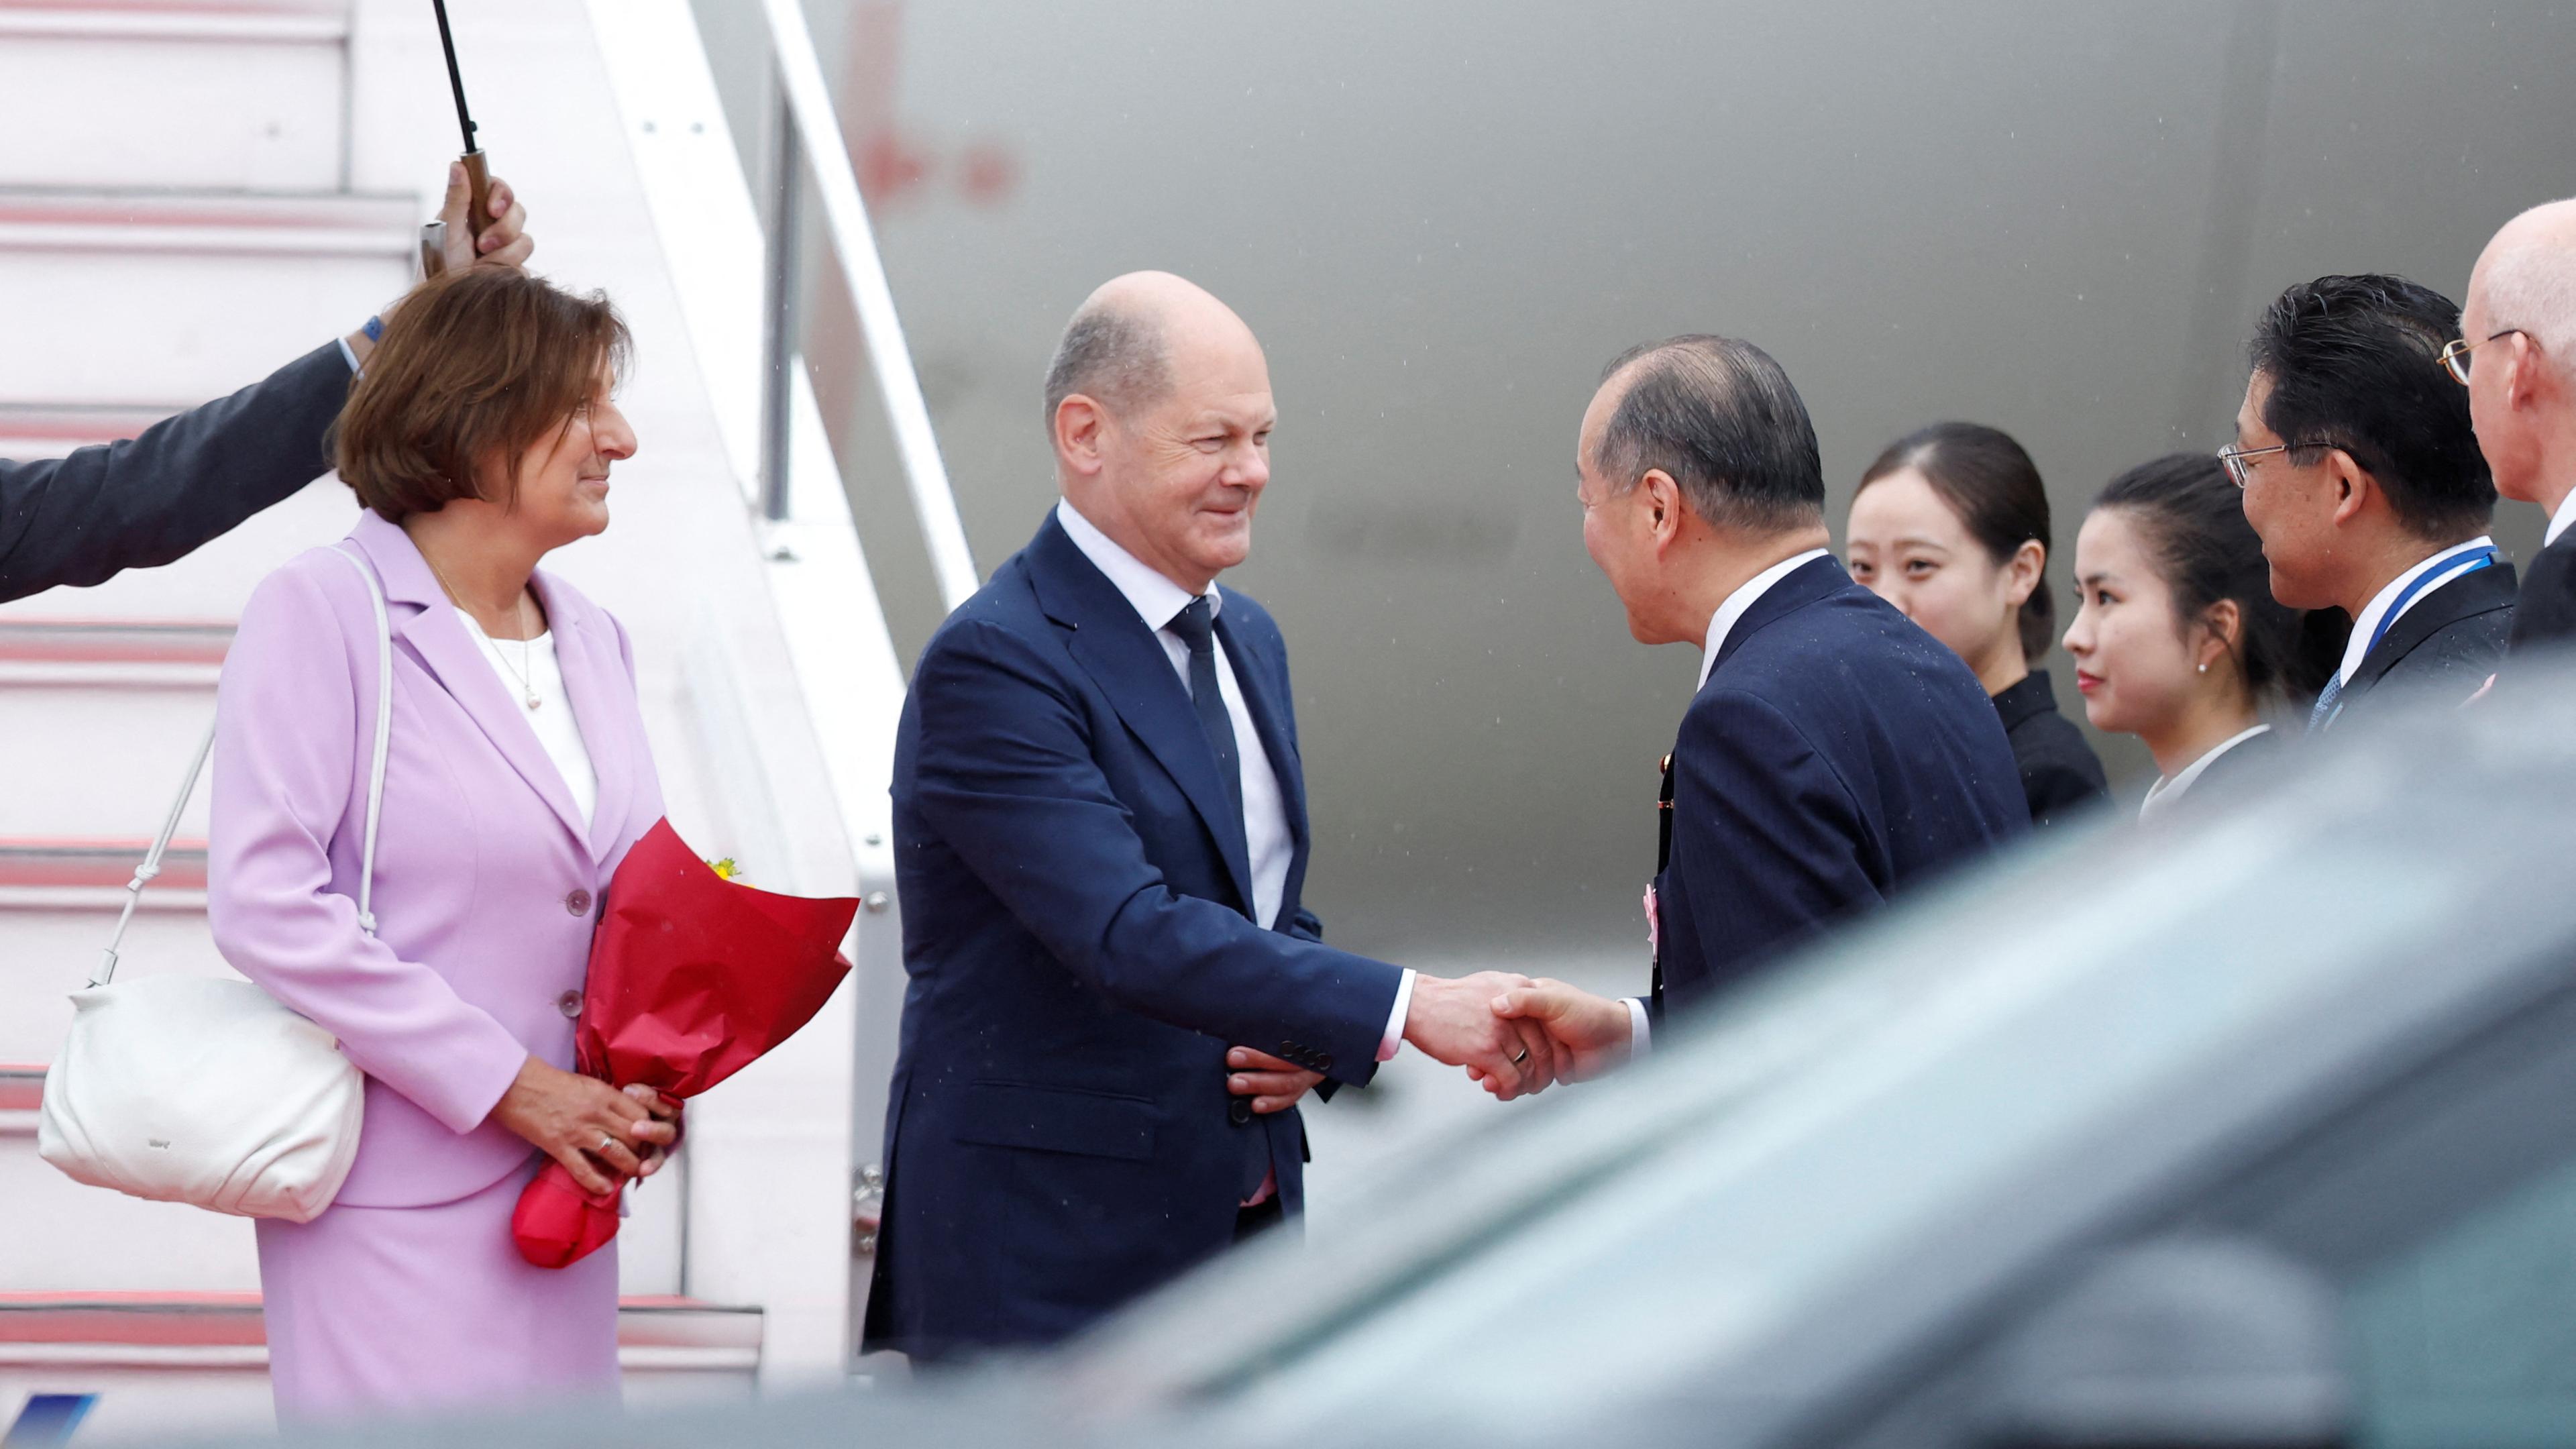 Bundeskanzler Scholz und seine Frau werden am Flughafen in Hiroshima von einem Empfangskommittee begrüßt